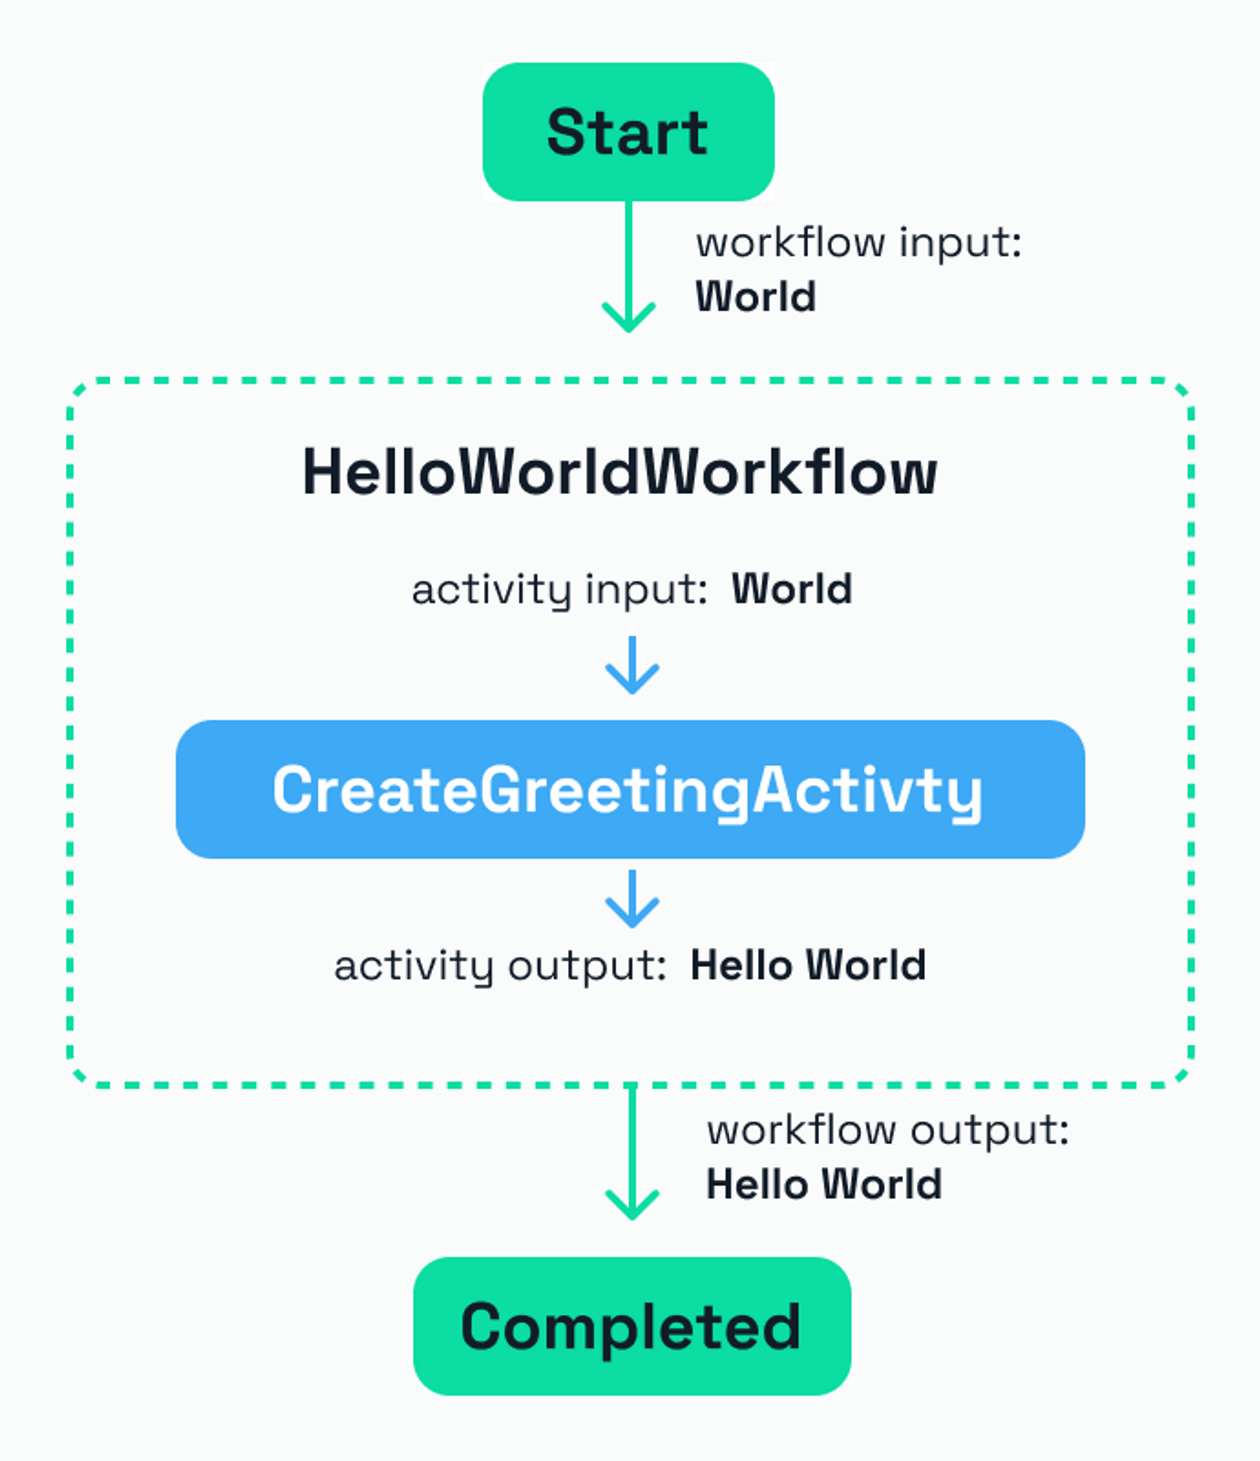 HelloWorld Workflow